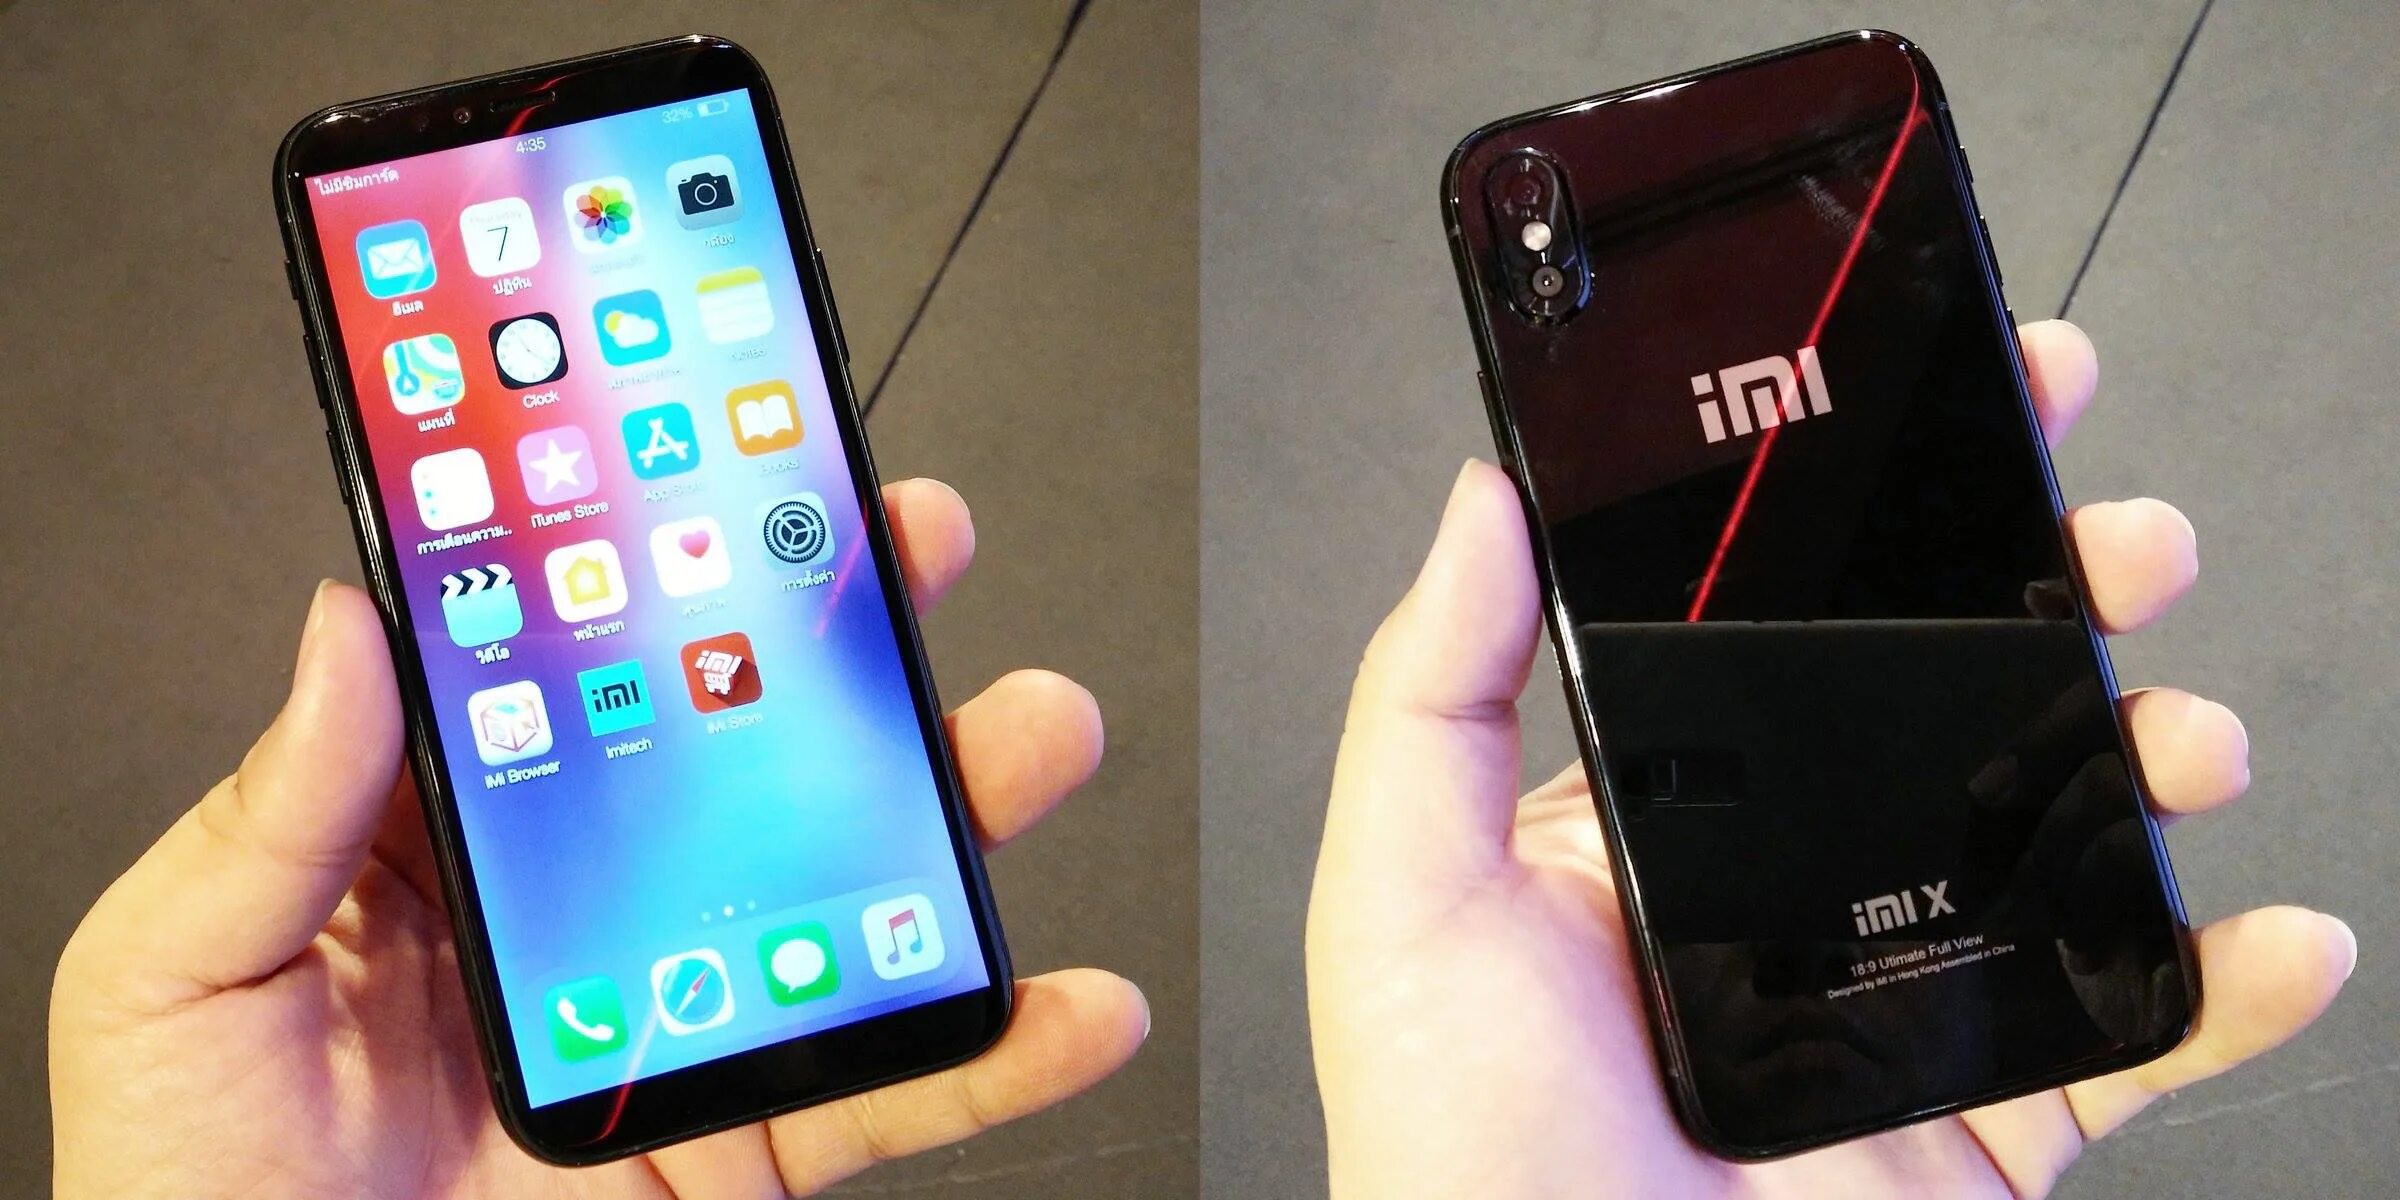 Телефон похожий на 10. Сяоми под айфон 10. Сяоми похожий на айфон 10. Xiaomi копия айфон x. Смартфоны похожие на iphone.